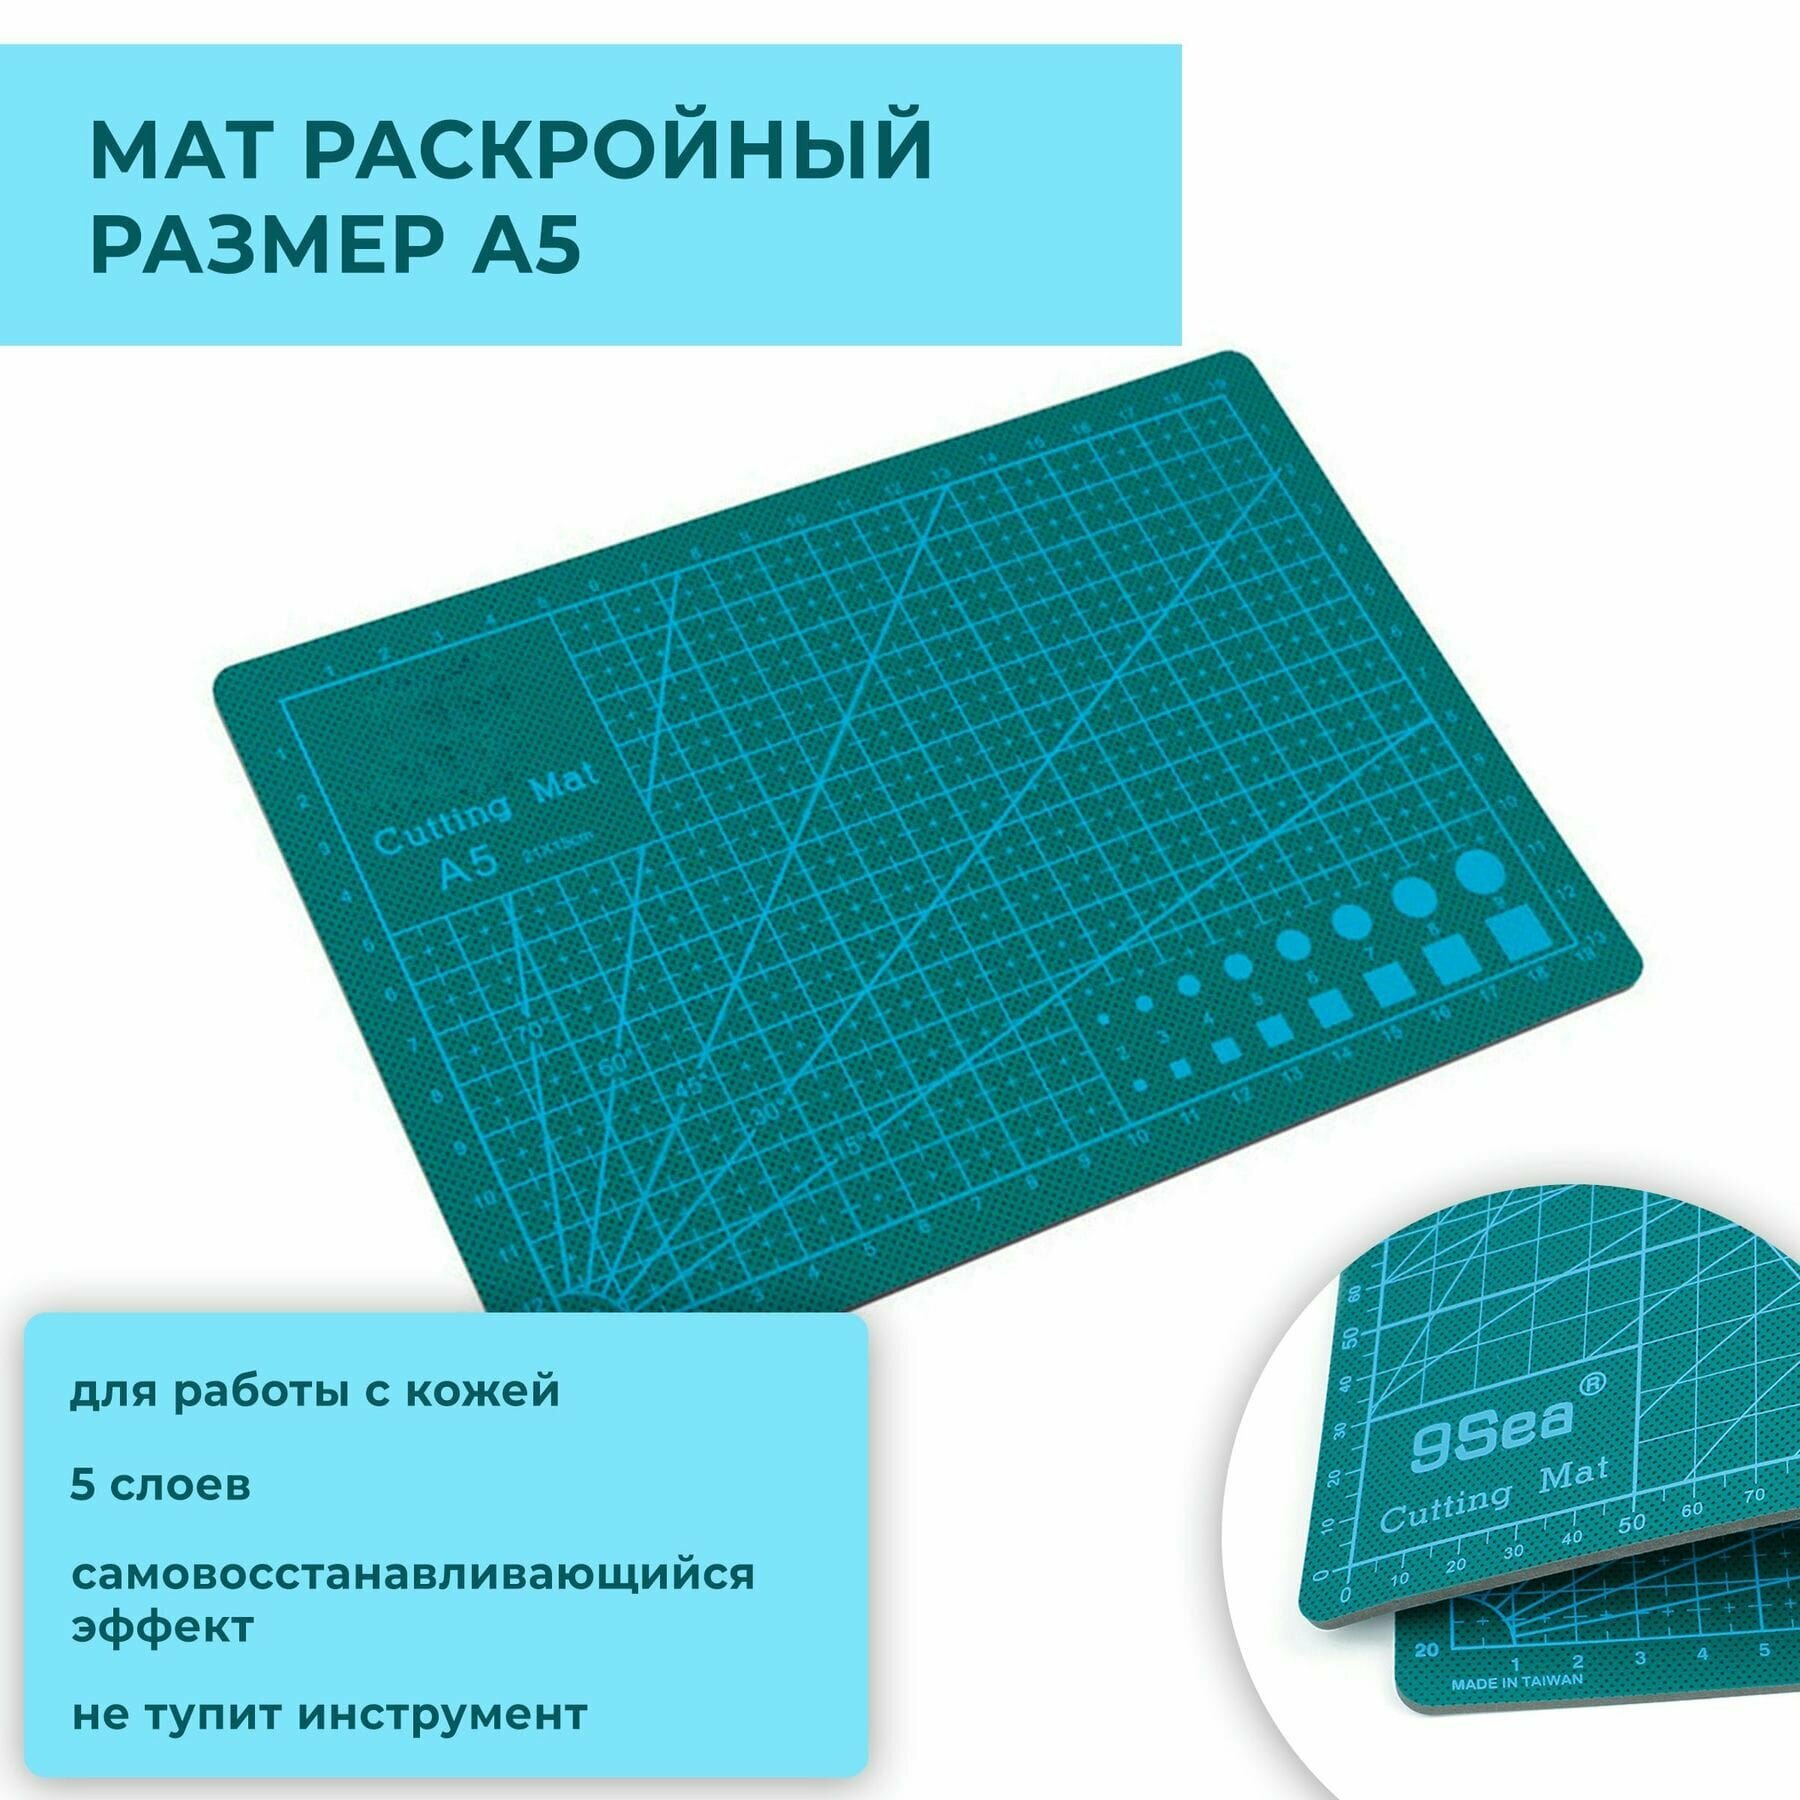 Коврик / мат для резки защитный непрорезаемый для раскройного ножа, 5-слойный, А5 (220х150 мм), двусторонний, толщина 3 мм, зеленый